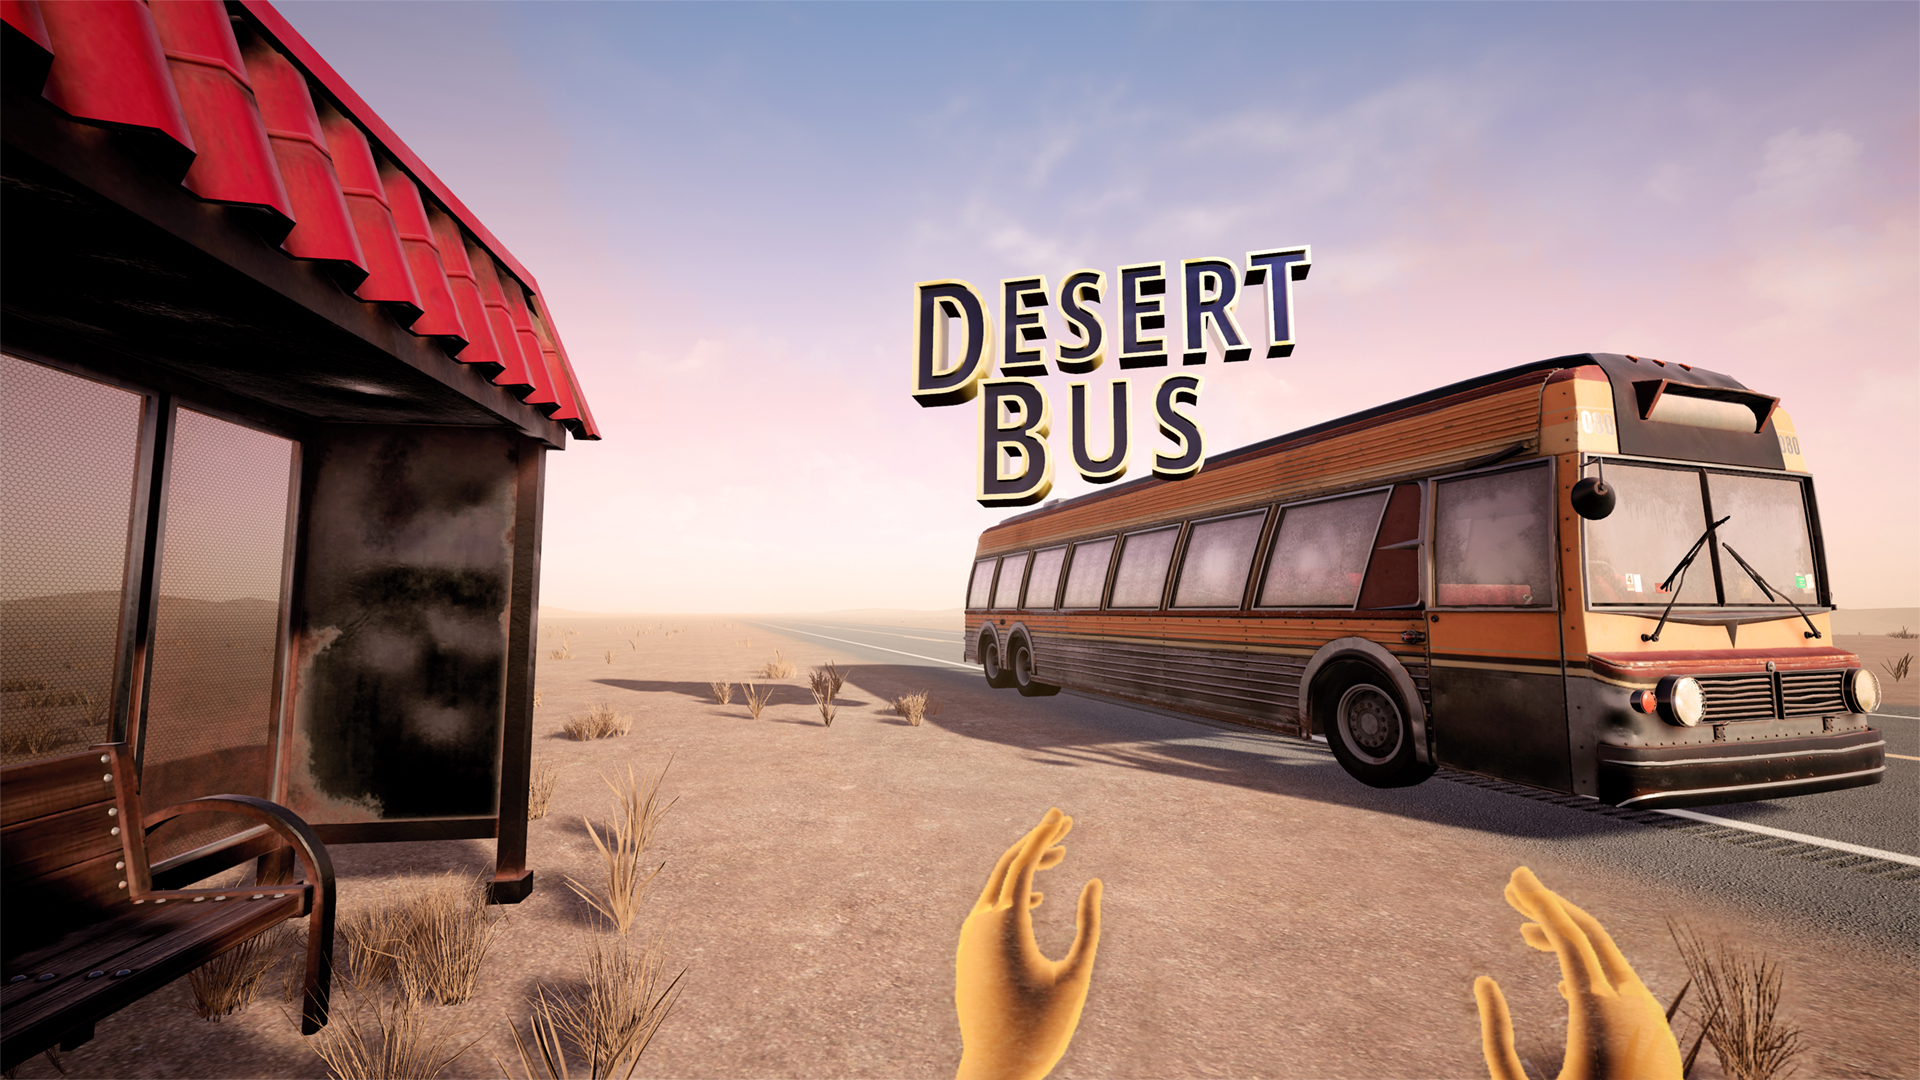 Desert Bus for Hope :: Blog